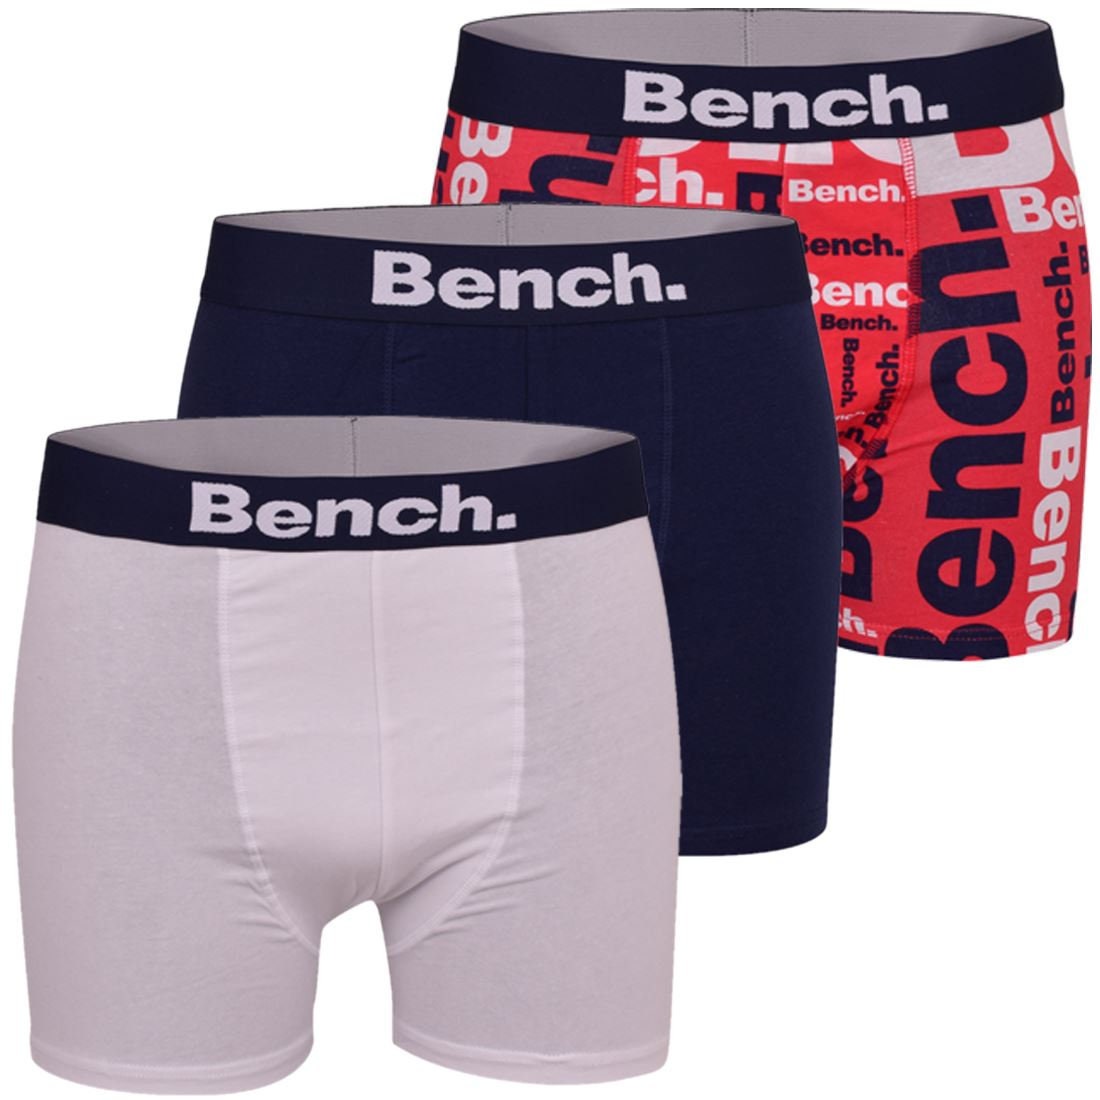 Bench Brief Underwear